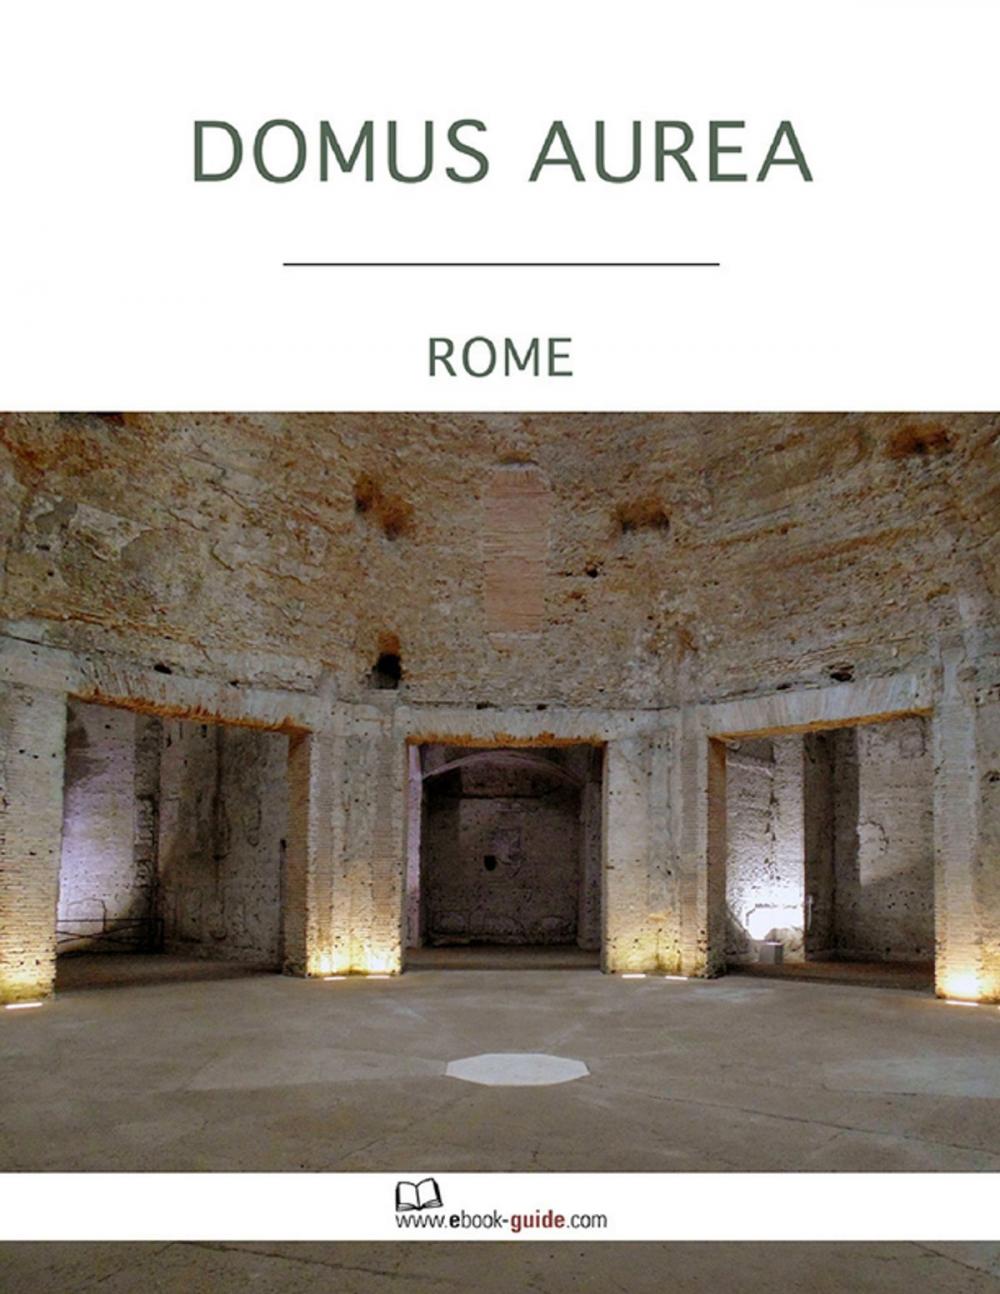 Big bigCover of Domus Aurea, Rome - An Ebook Guide